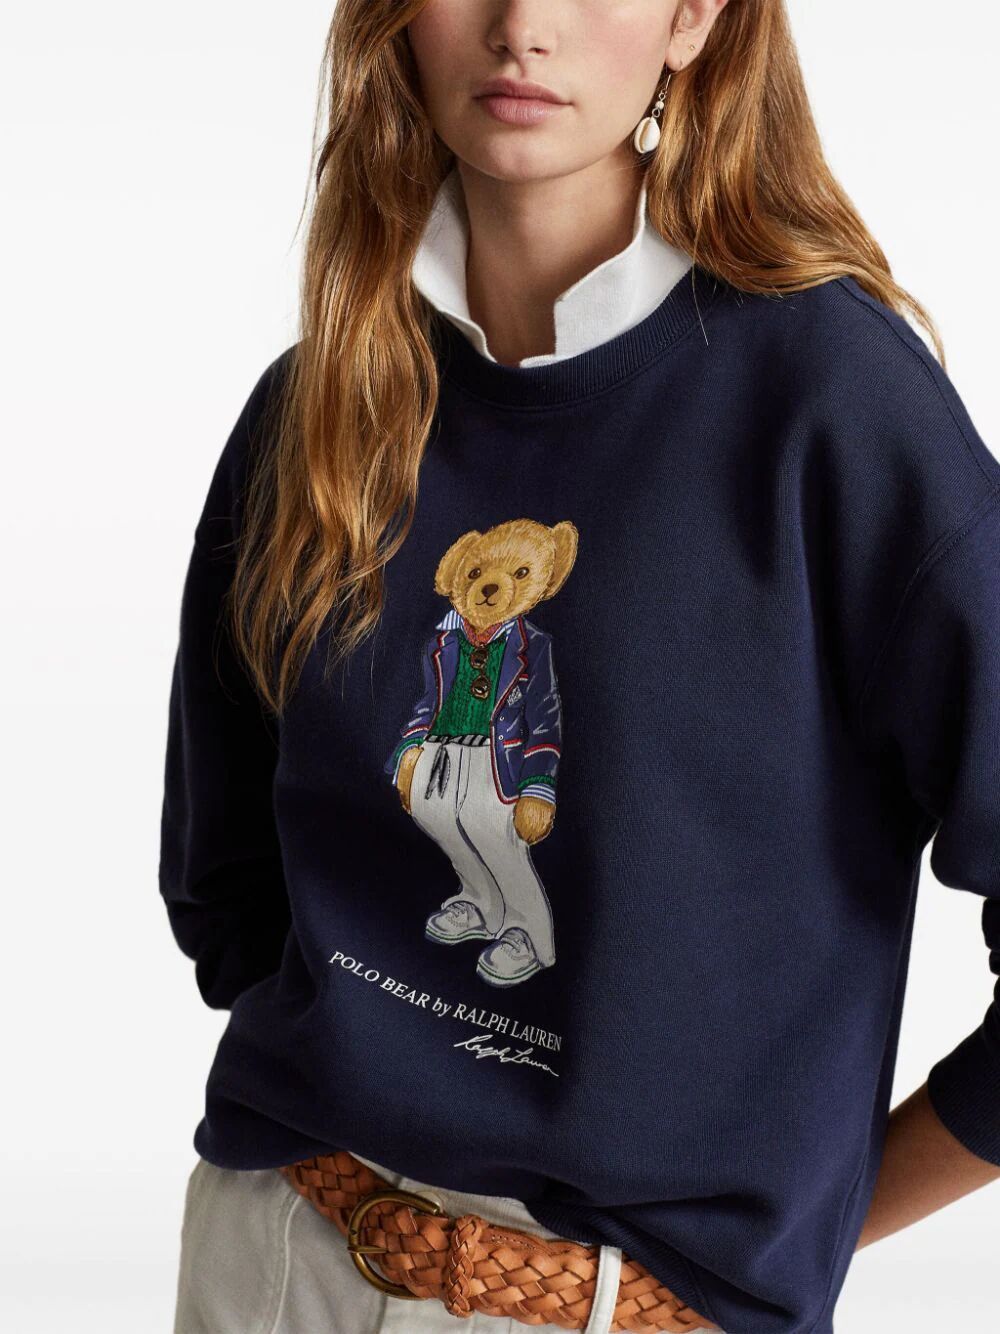 Shop Polo Ralph Lauren Crew Neck Sweatshirt With Teddy In Blue